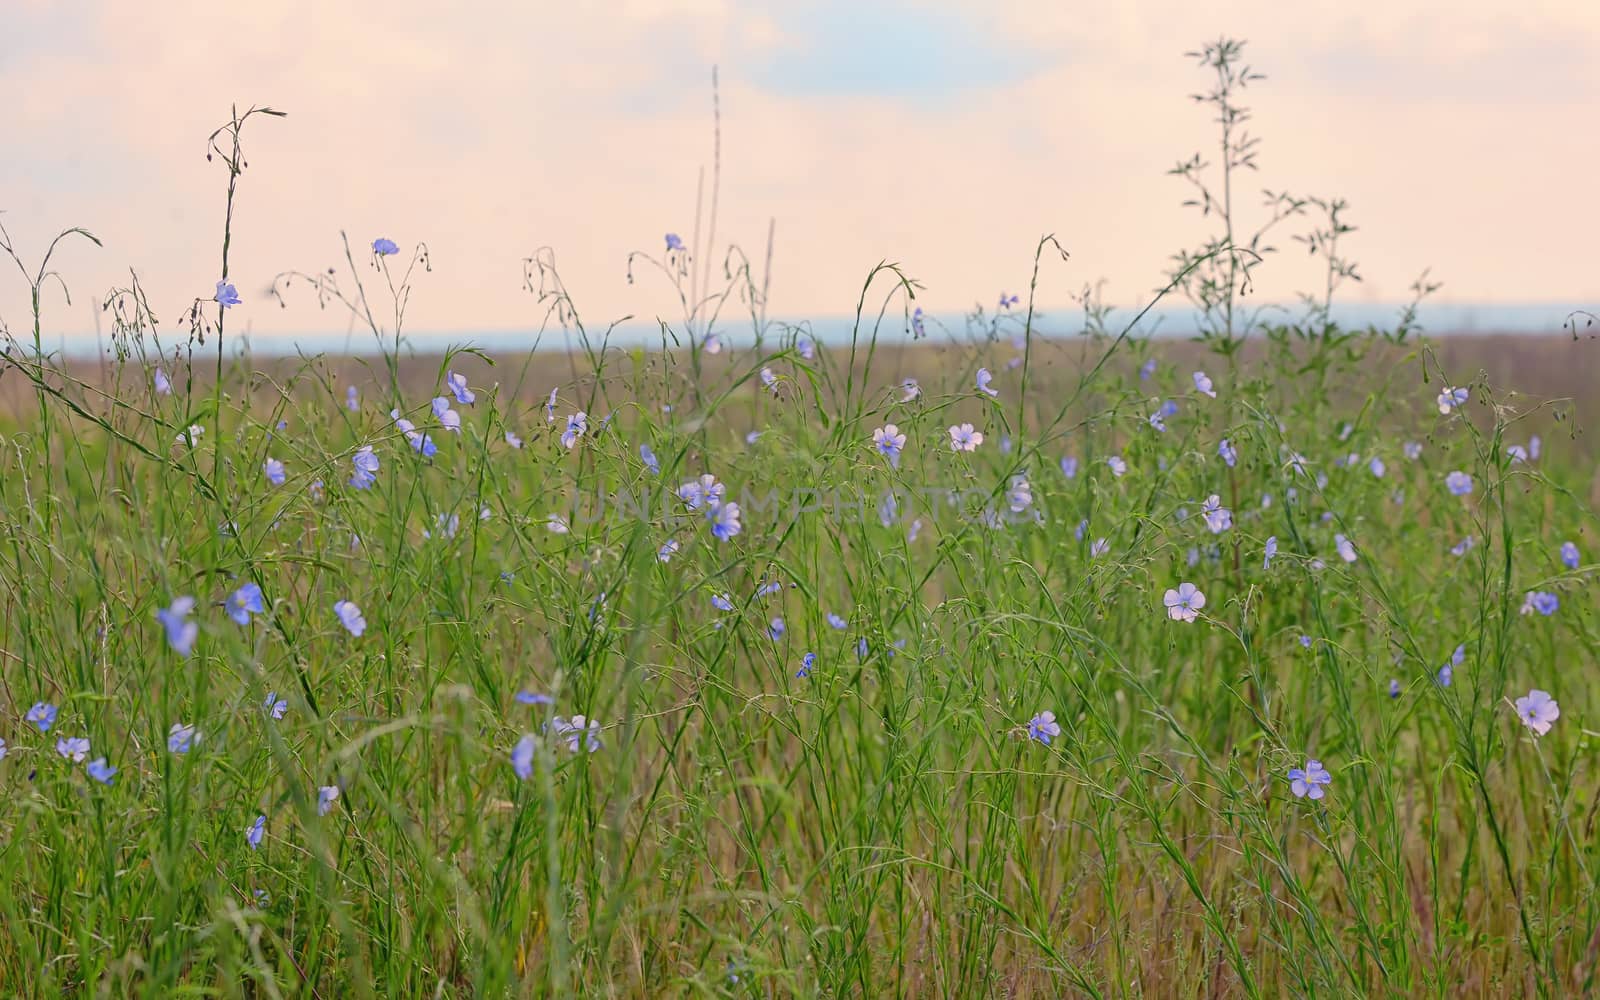 Nemophila flower field, blue flowers on field